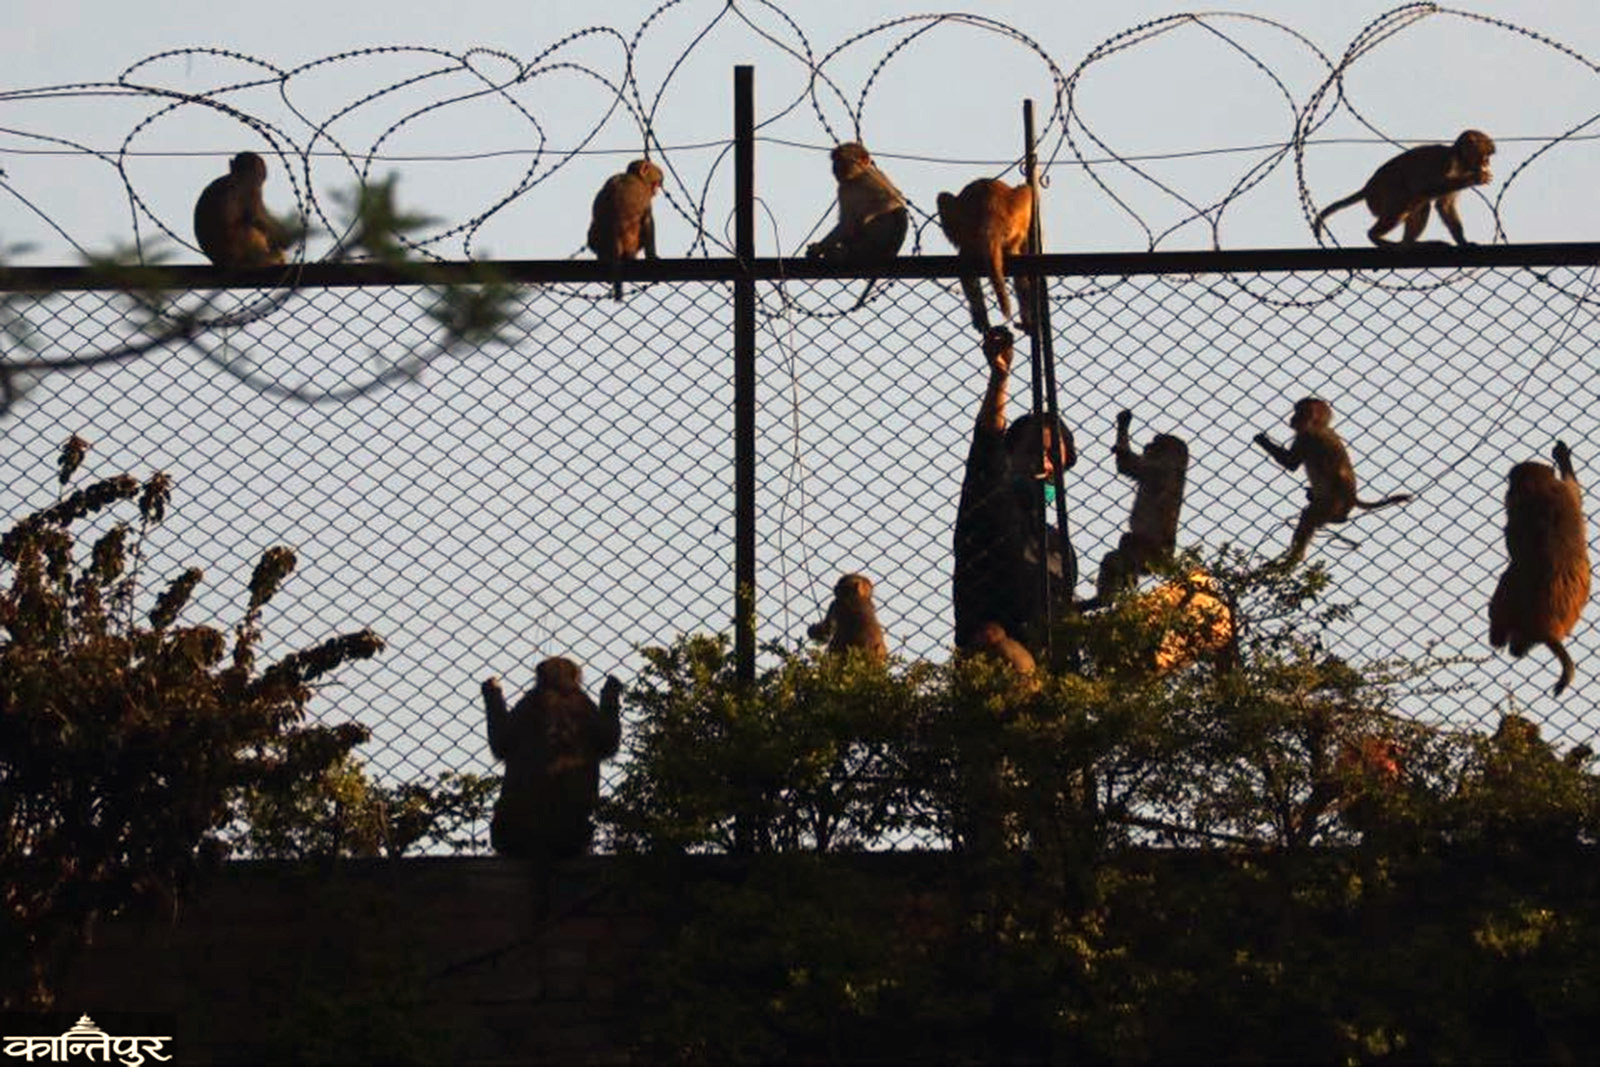 foto-reportaje-voluntarios-al-rescate-de-macacos-en-nepal-dando-de-comer-a-los-monos13.jpg.jpg